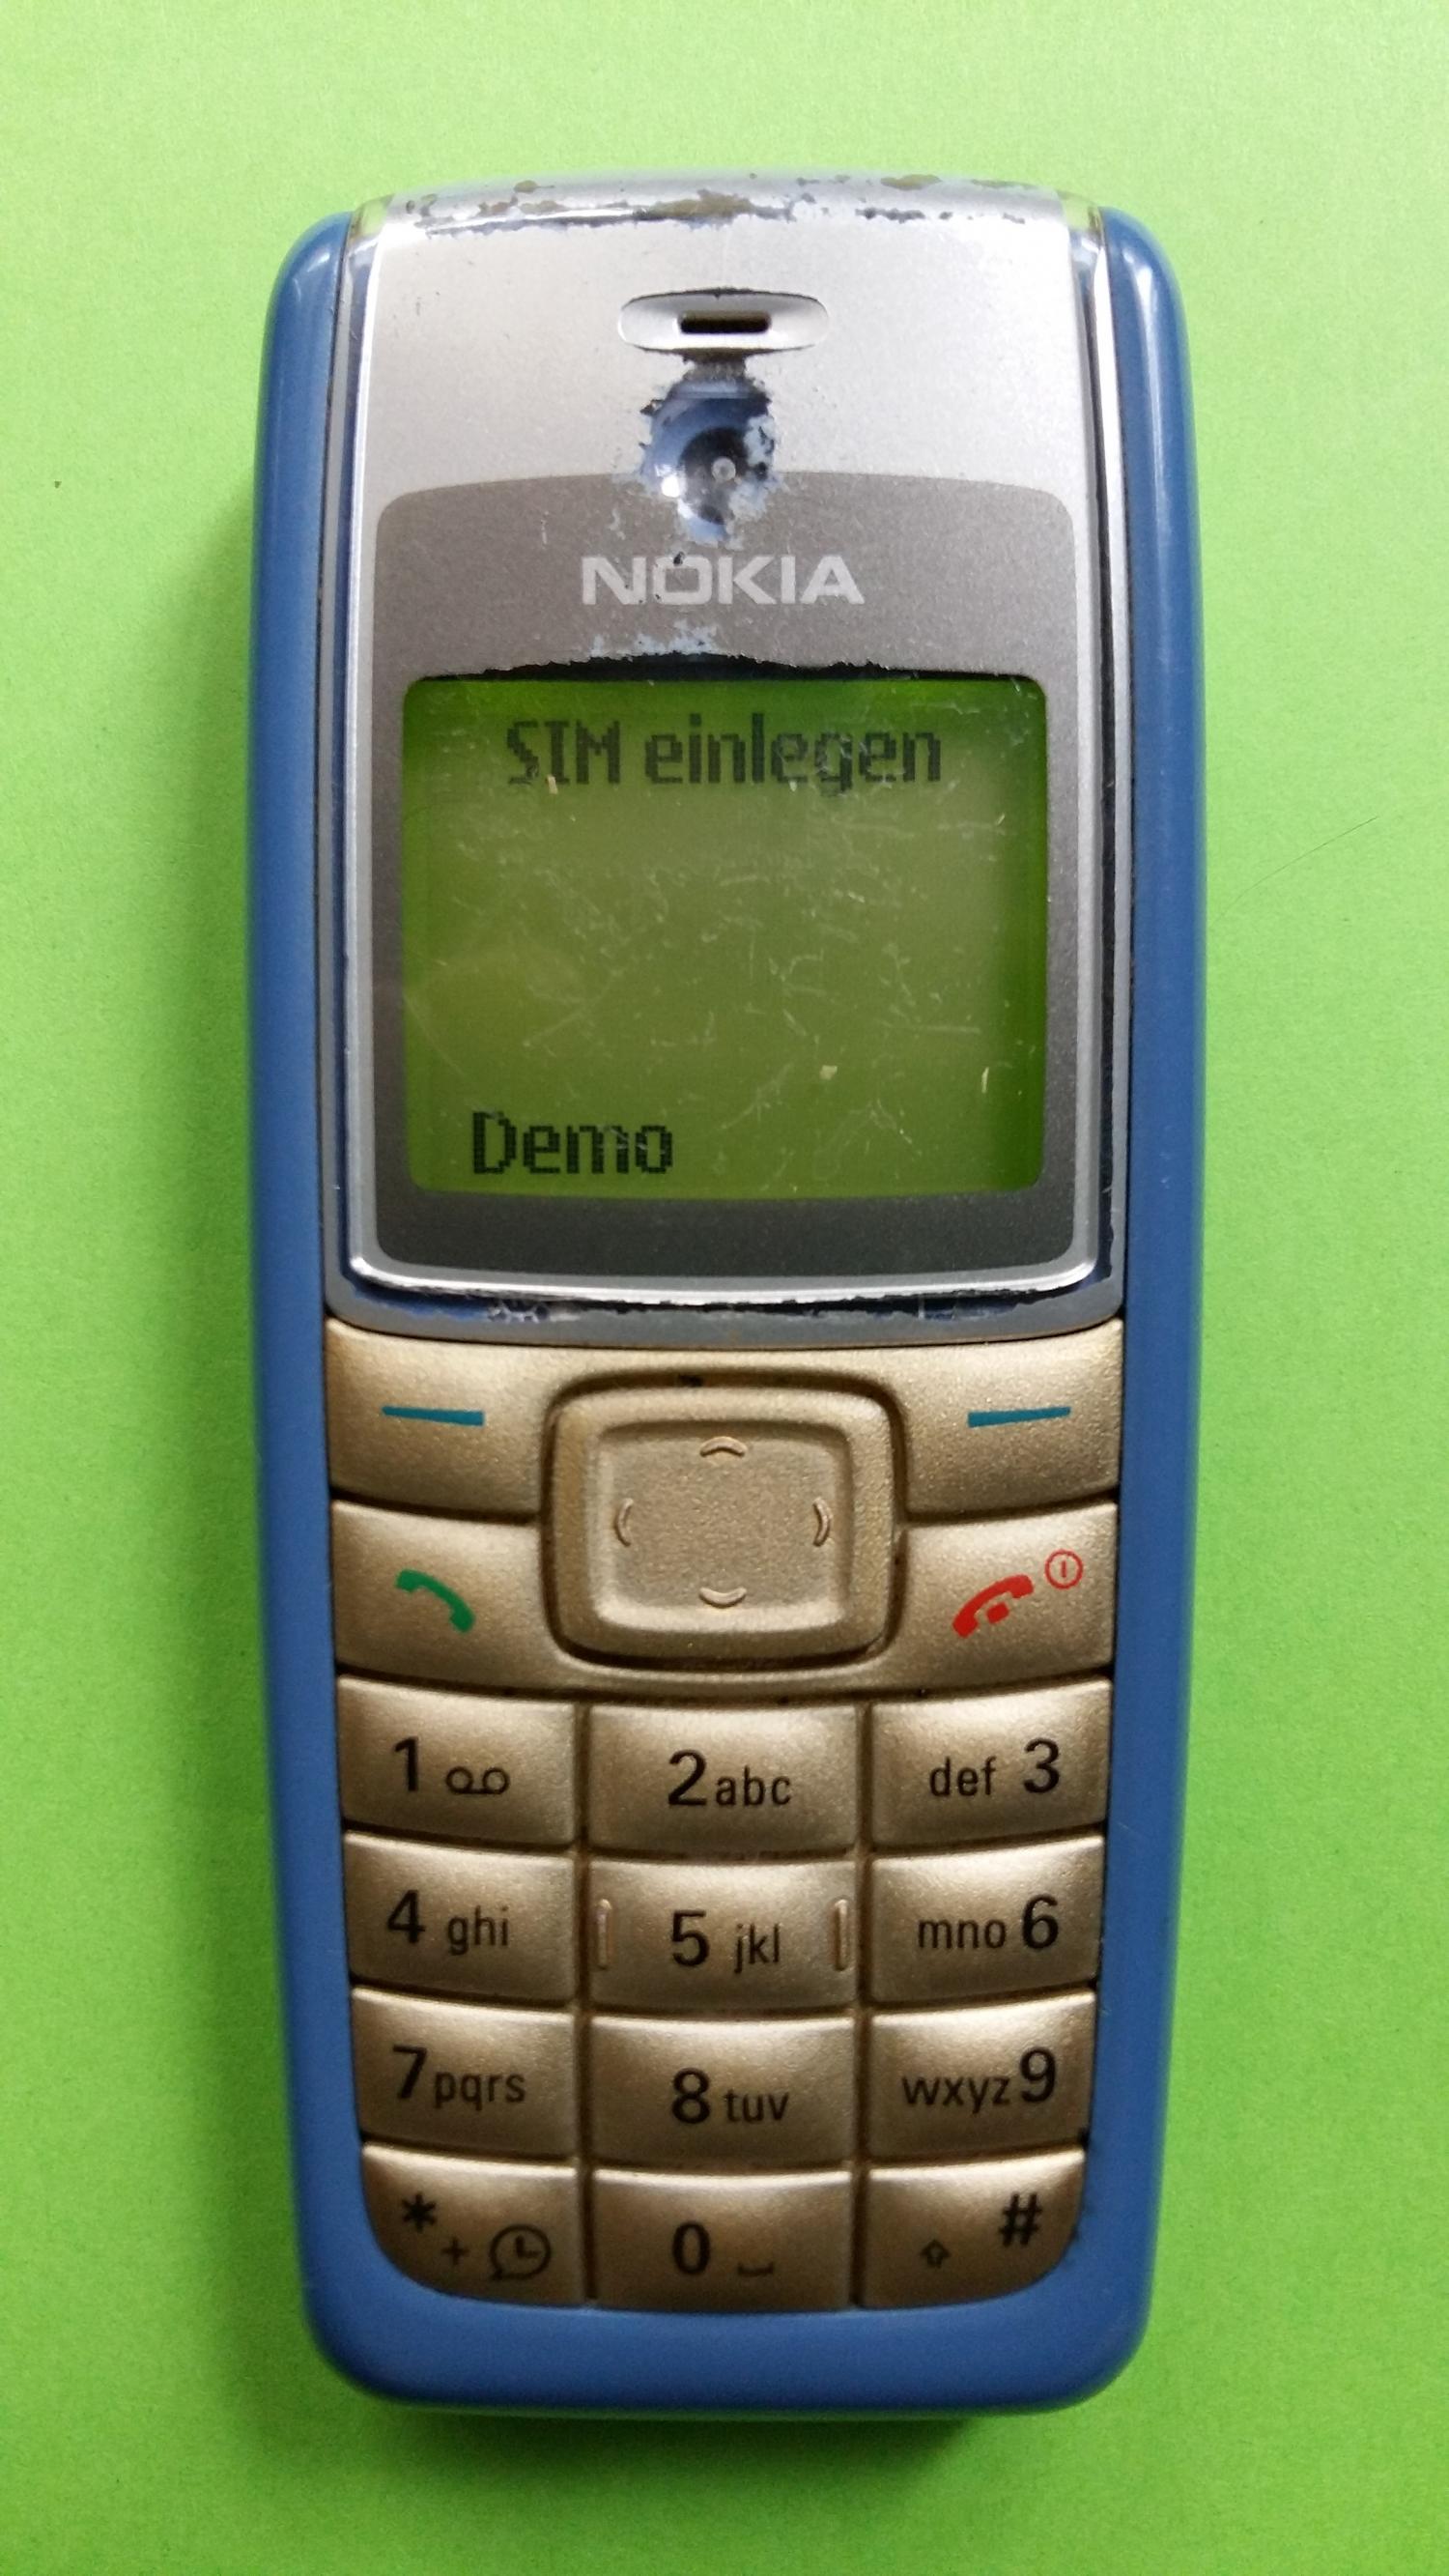 image-7303003-Nokia 1110i (4)1.jpg